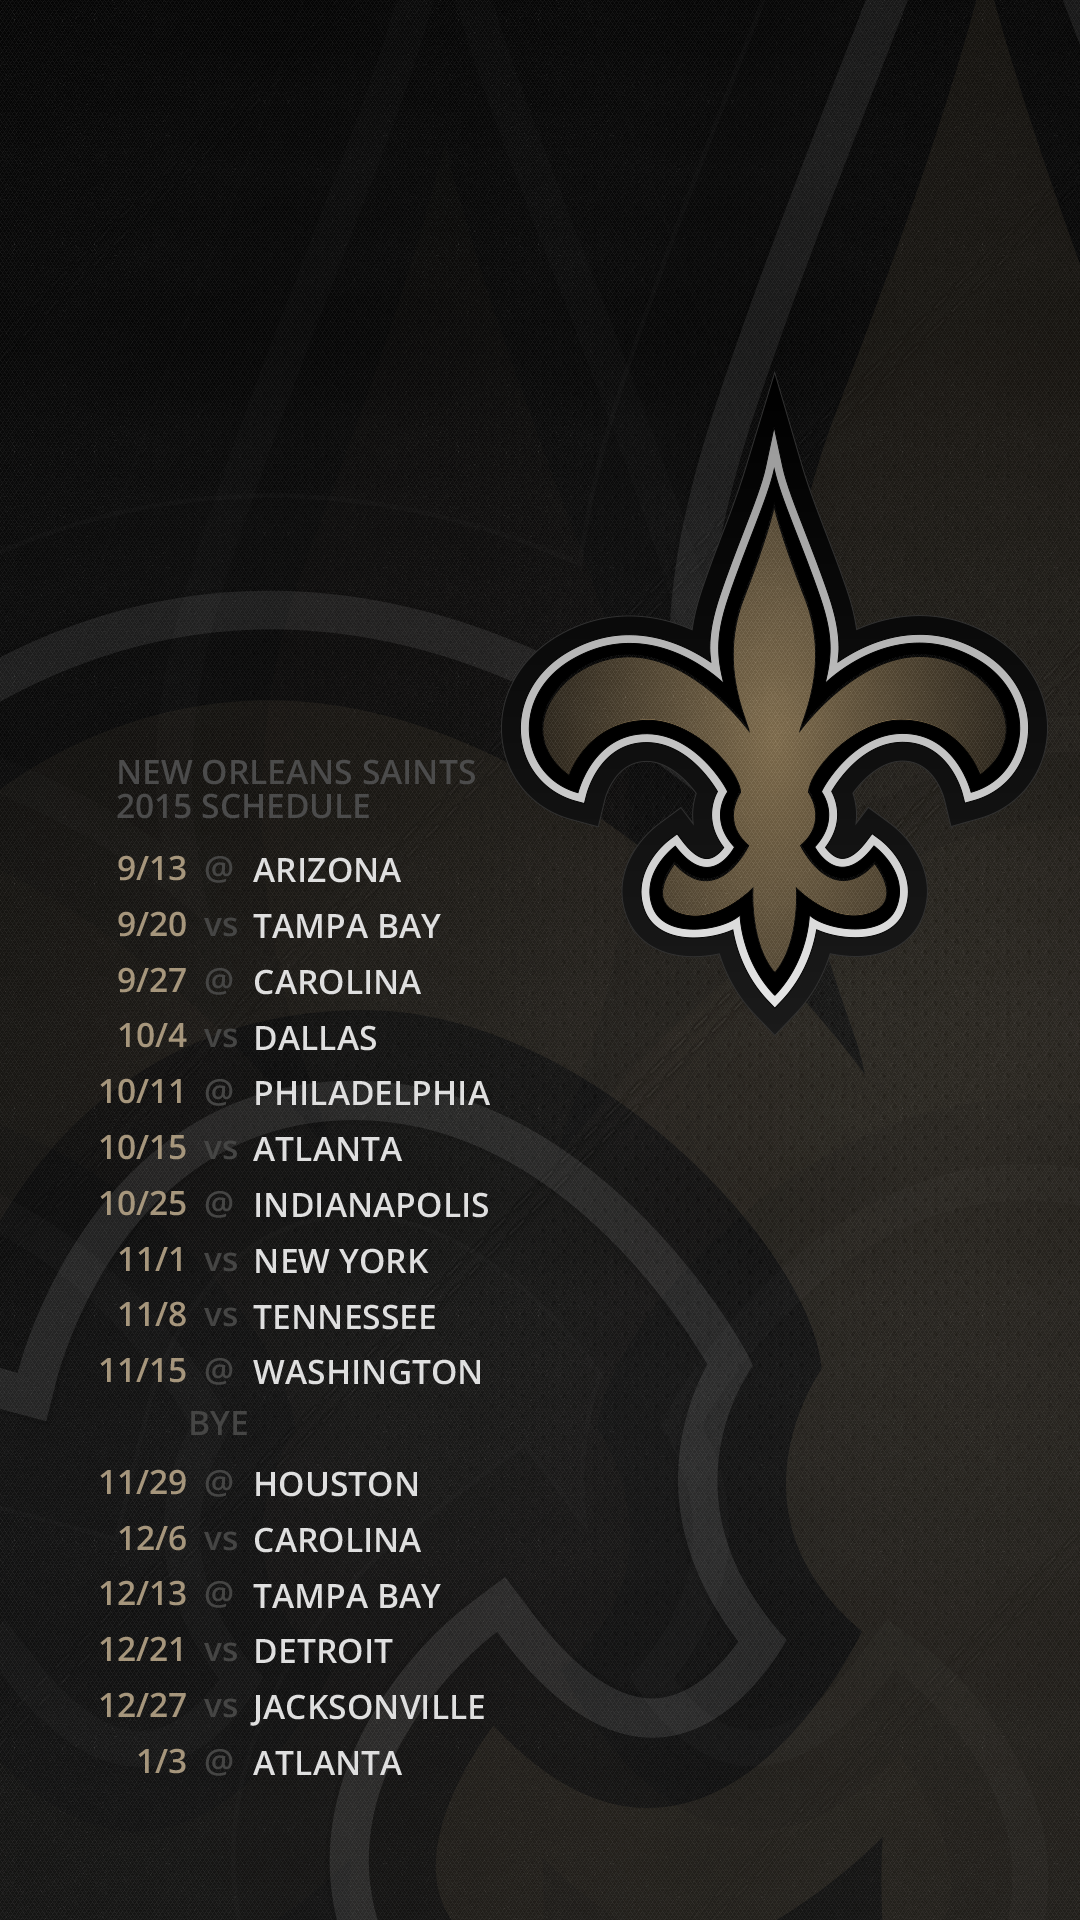 New Orleans Saints - 2015 Schedule - Desktop & Mobile - Album on Imgur